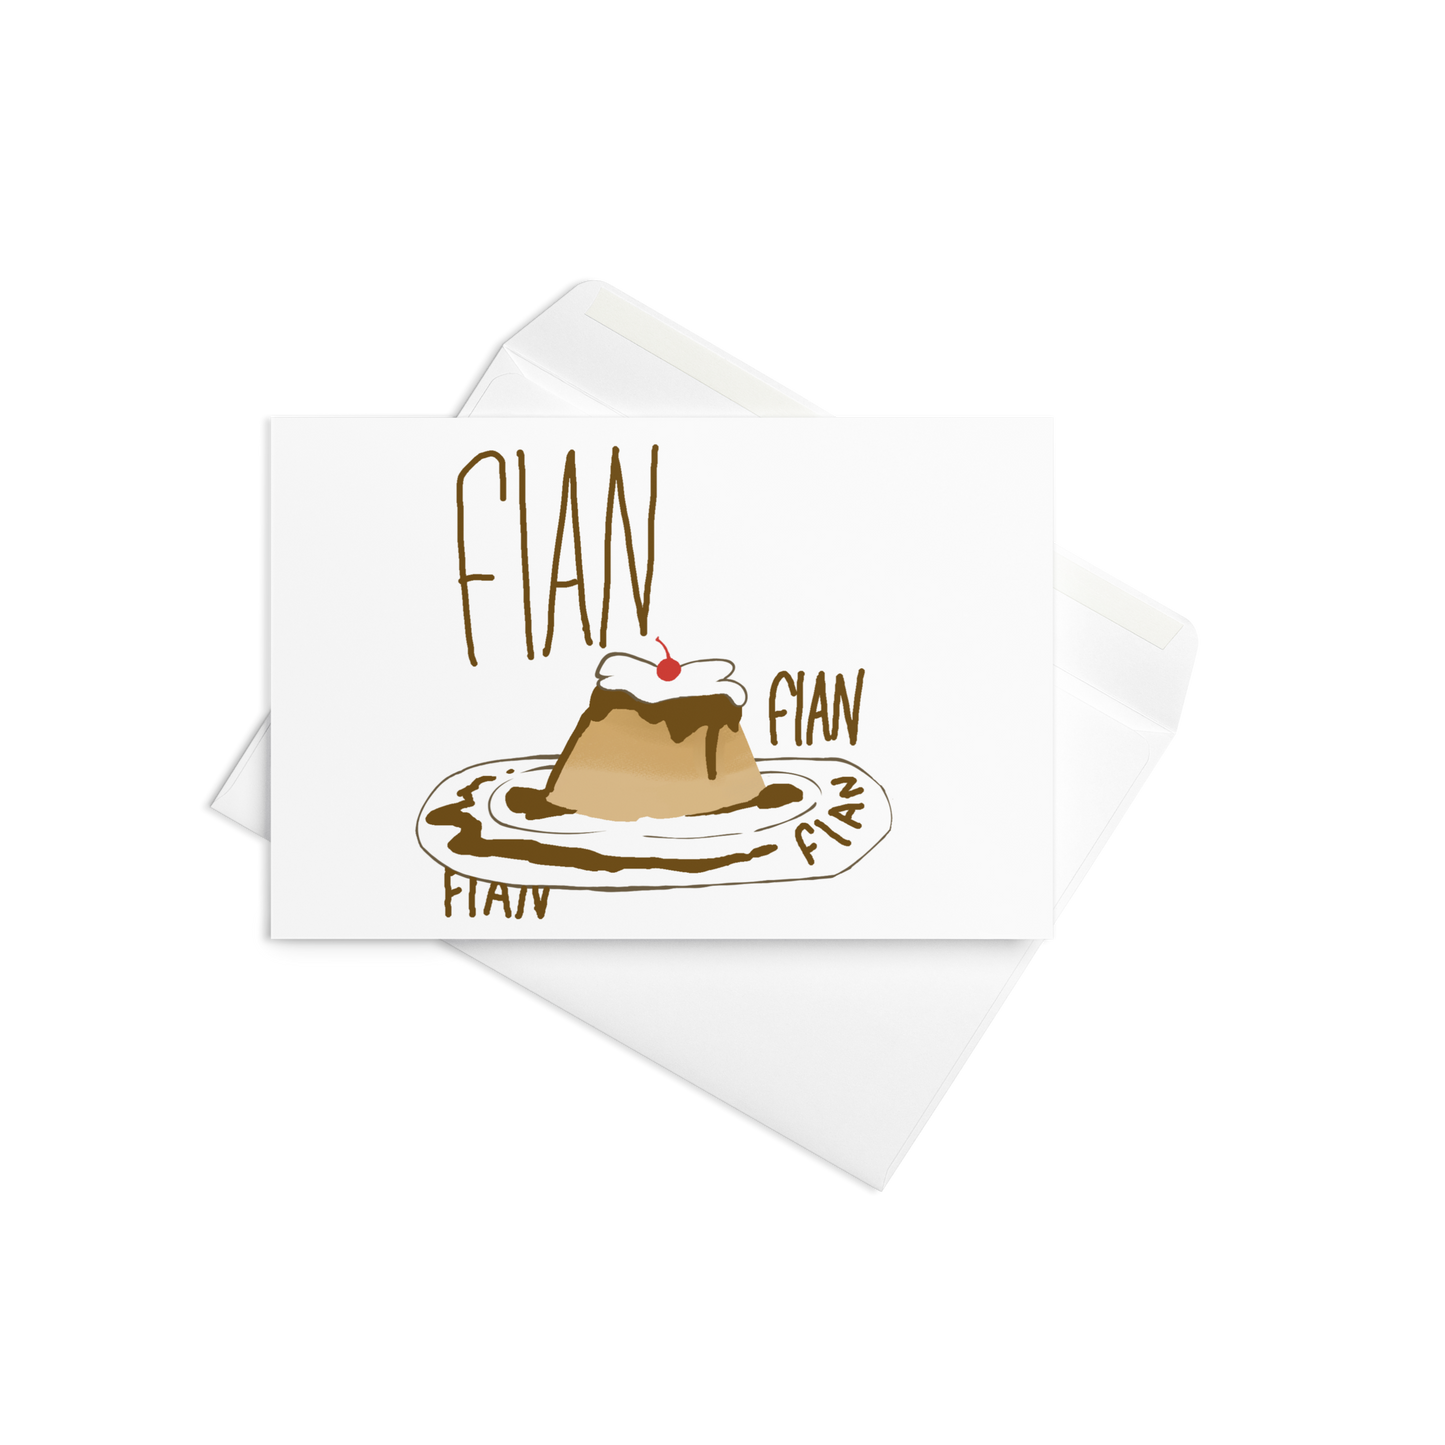 "Flauna?" Card